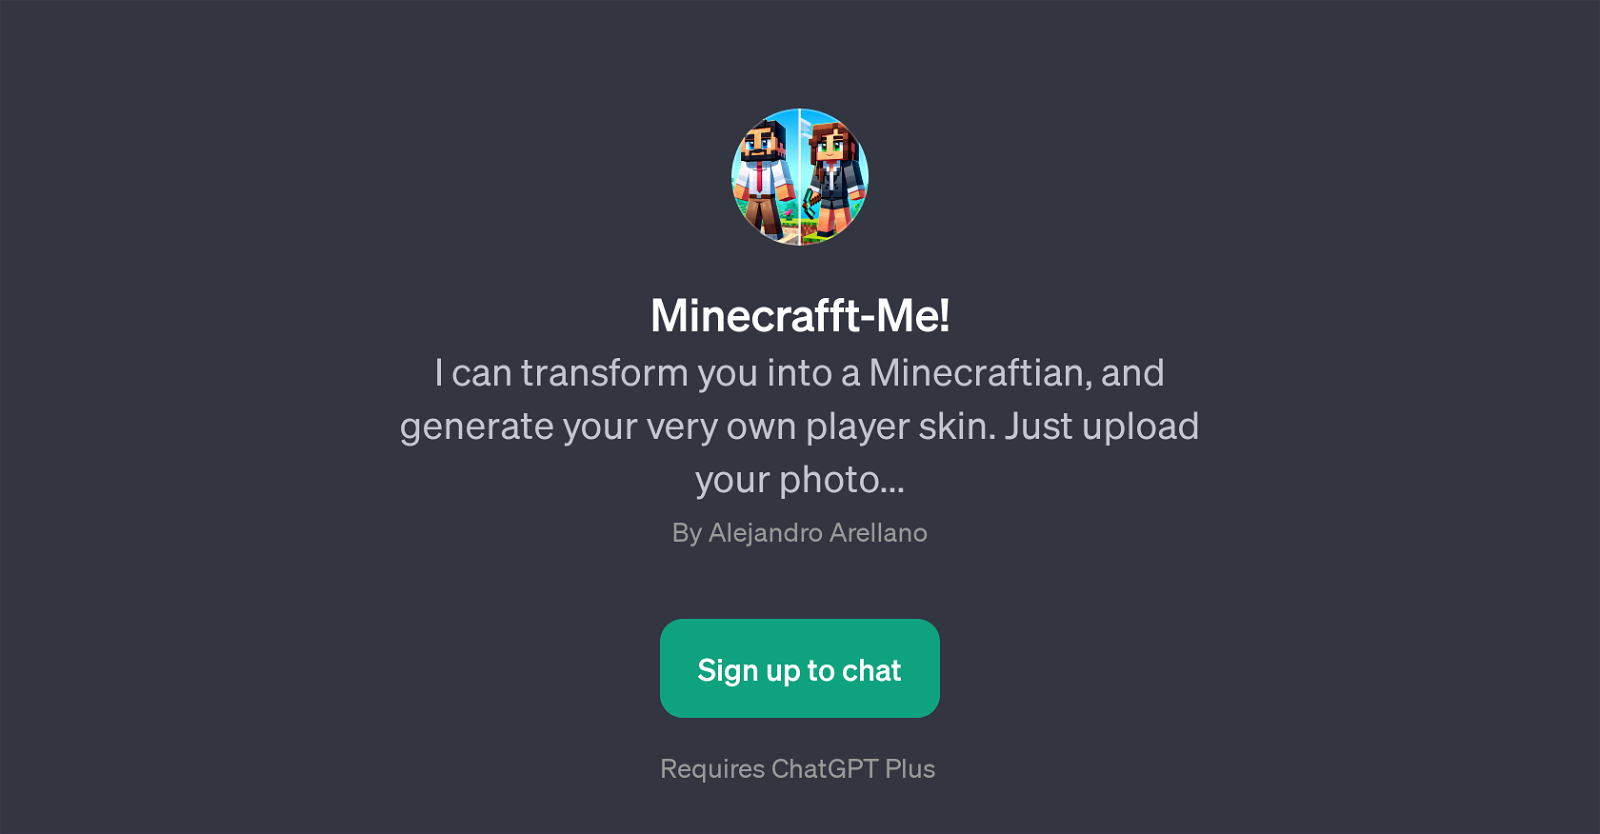 Minecrafft-Me website